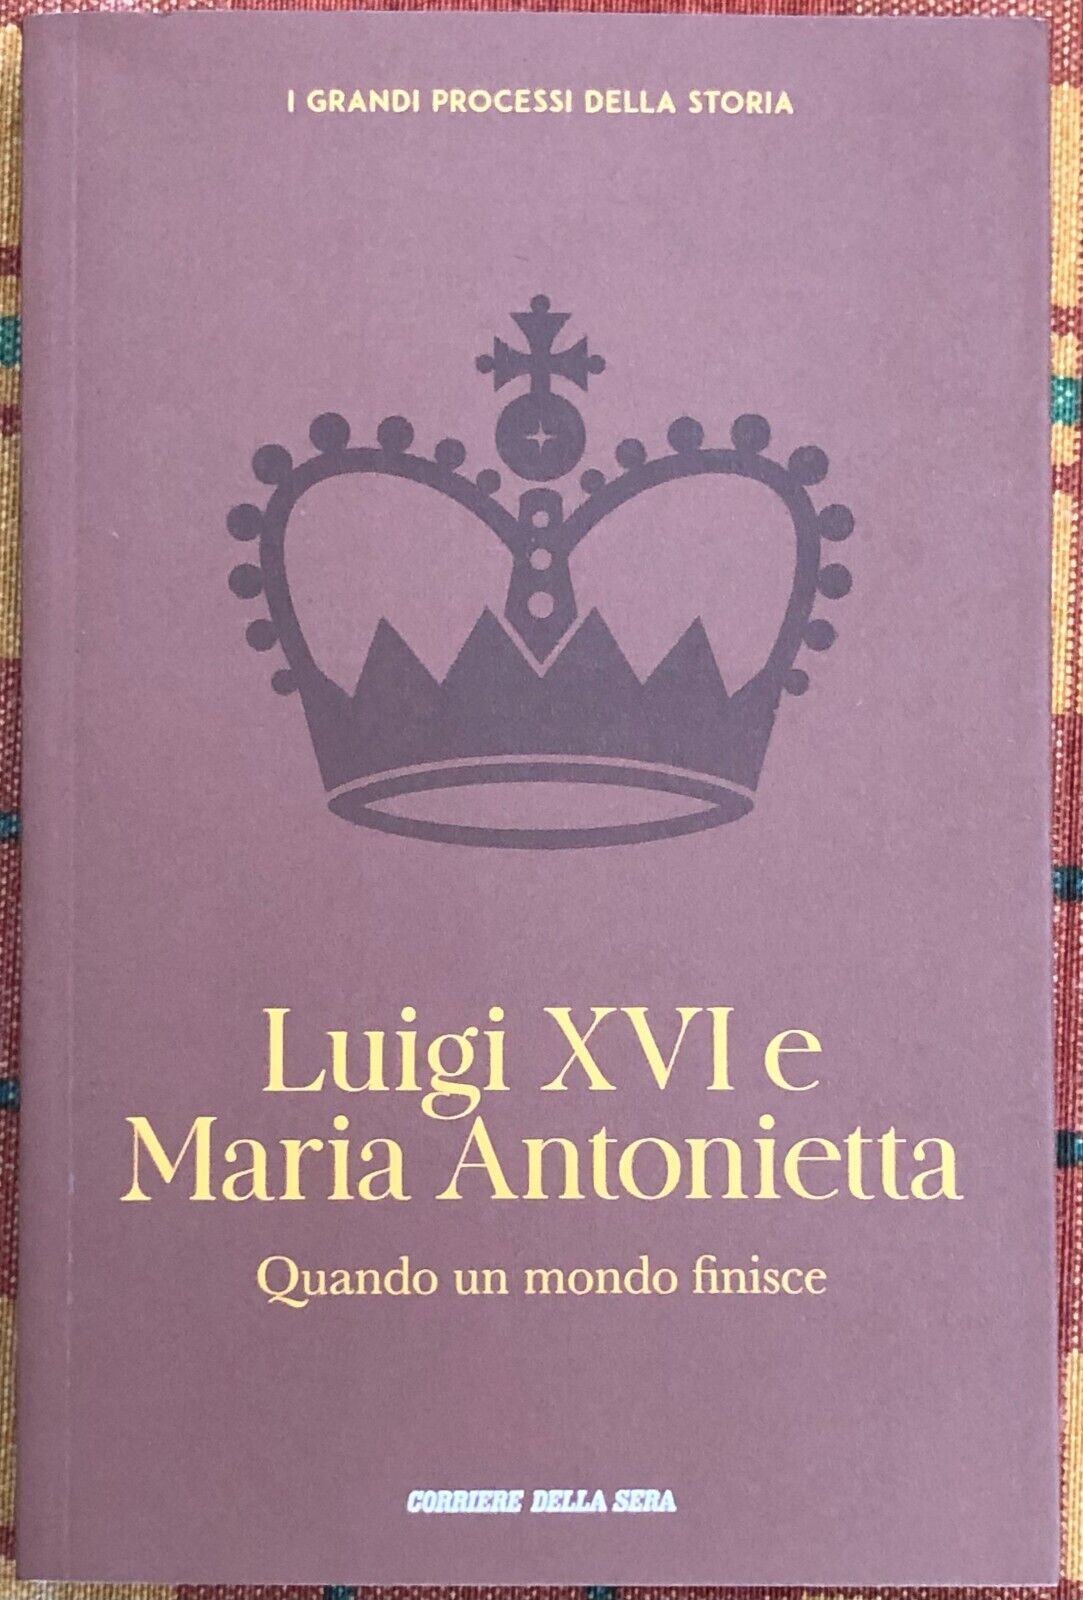  I grandi processi della storia n. 2 - Luigi XVI e Maria Antonietta. Quando un m